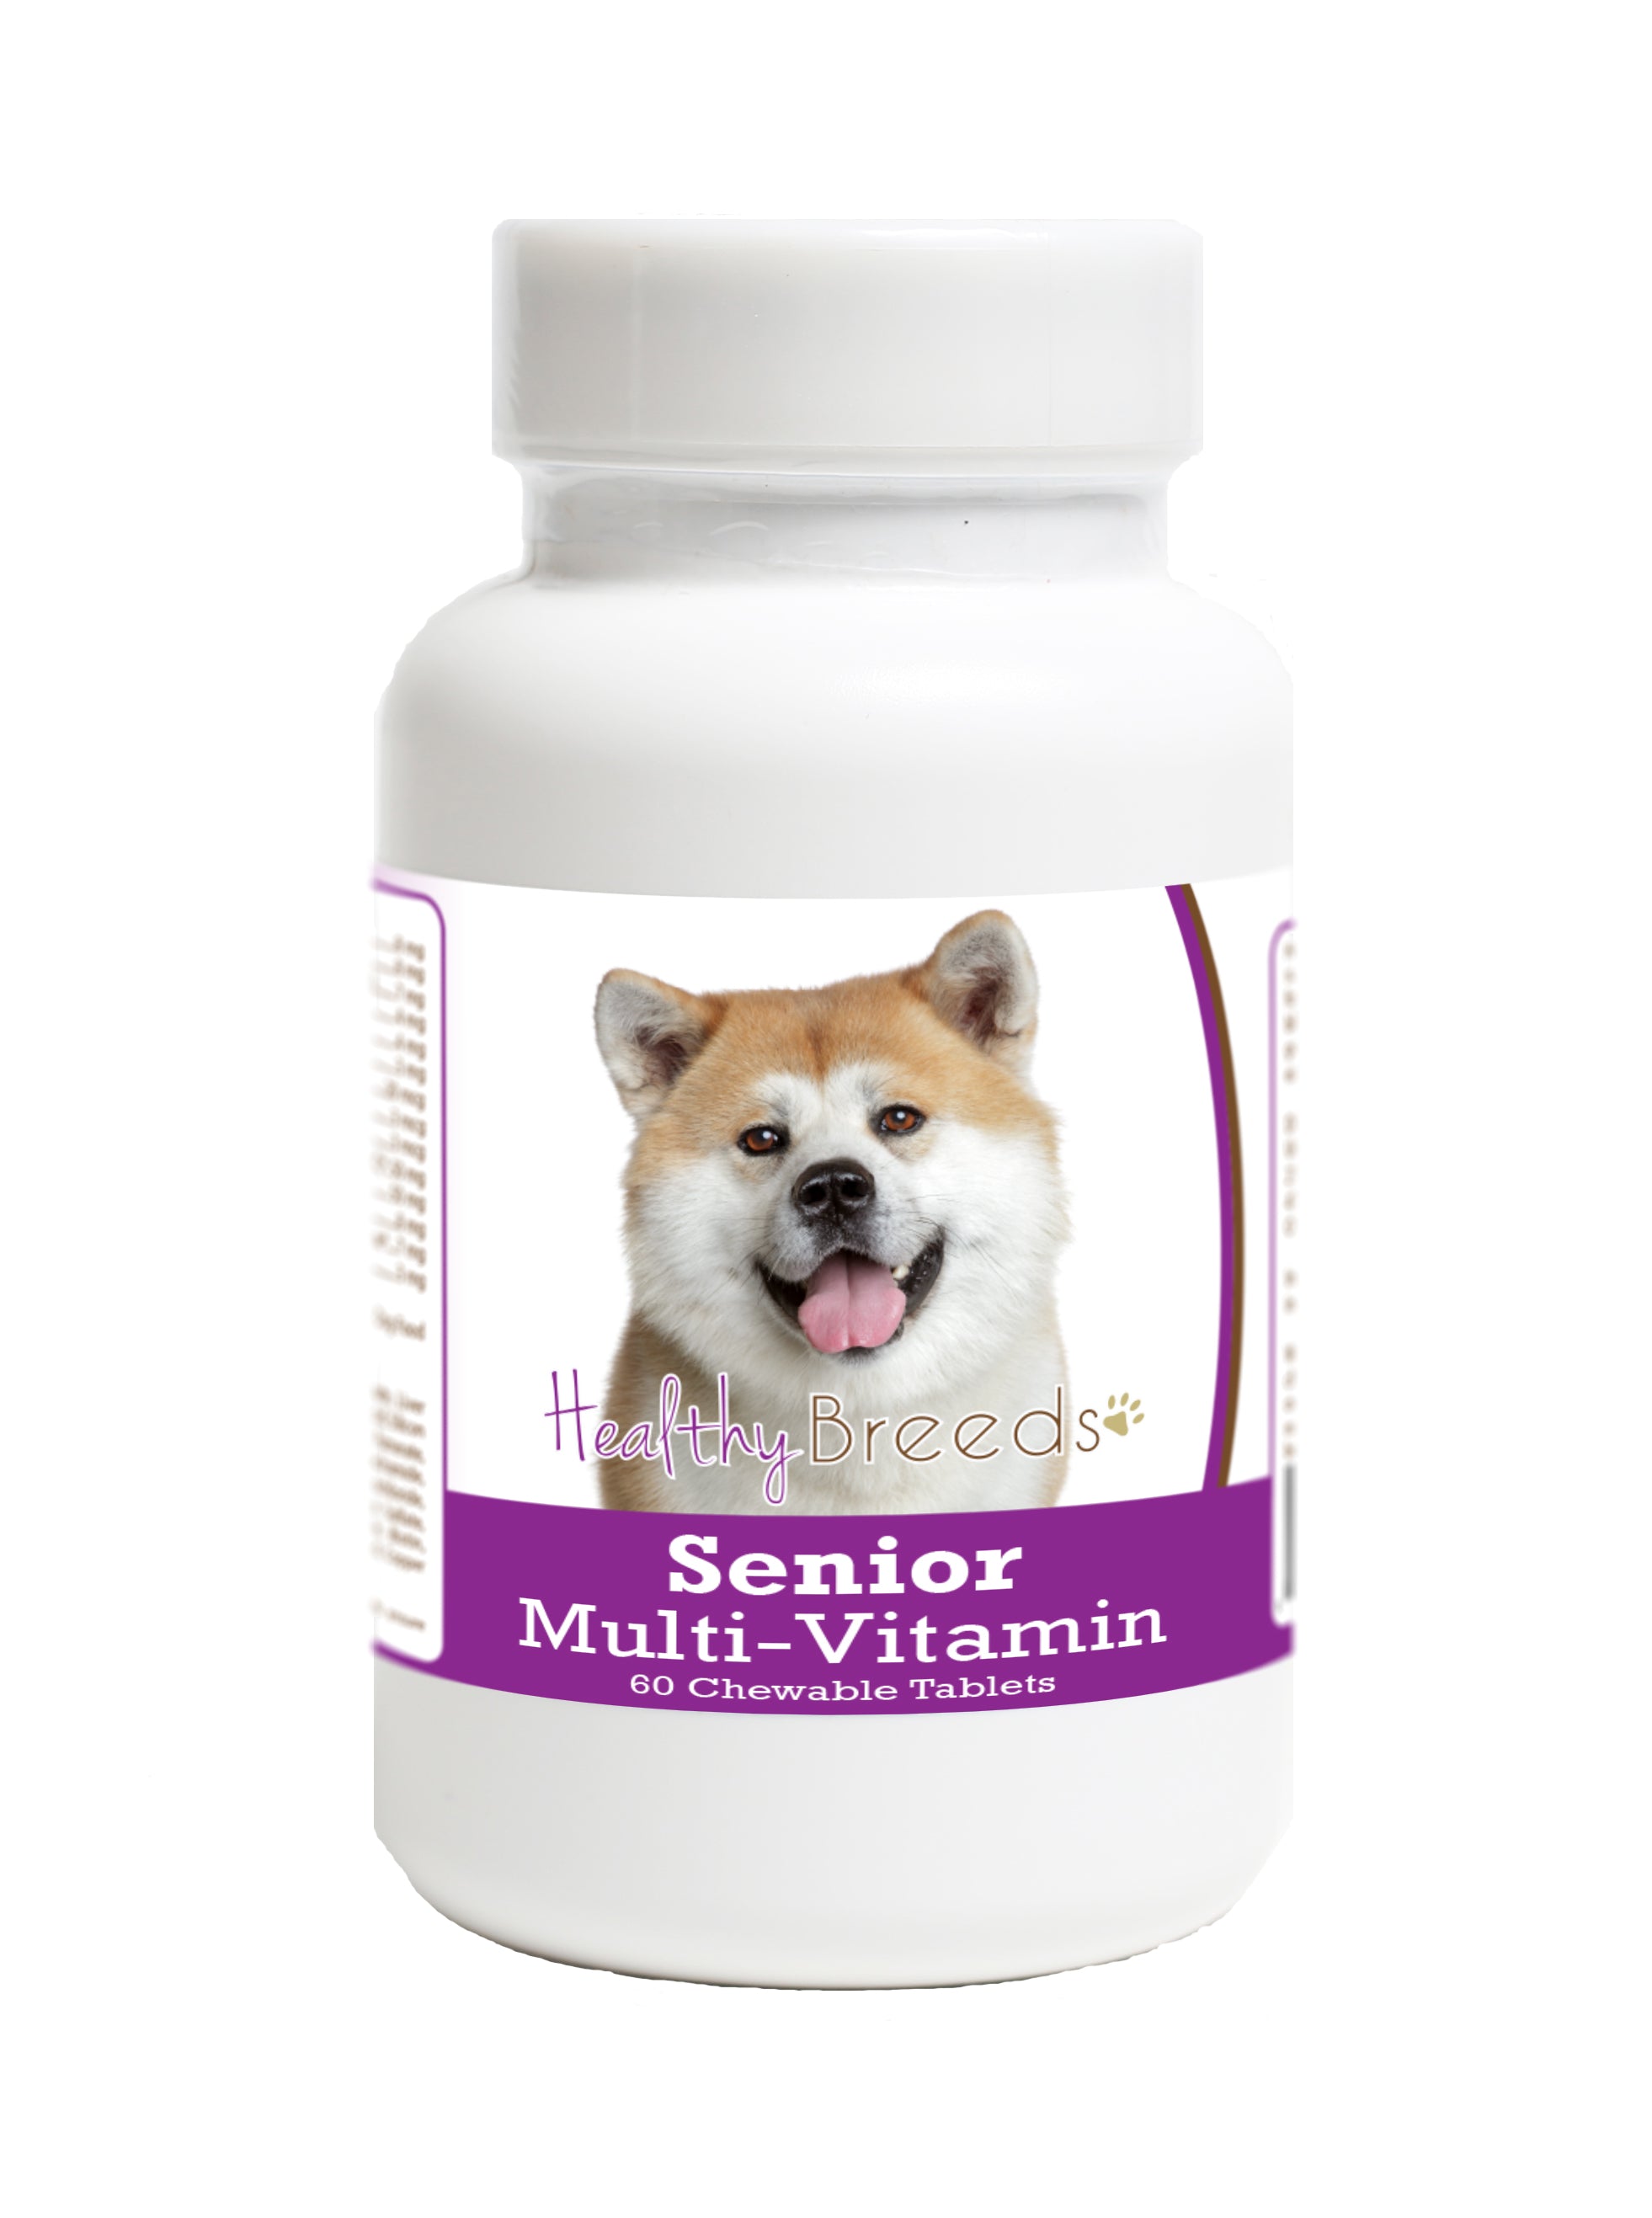 Akita Senior Dog Multivitamin Tablets 60 Count